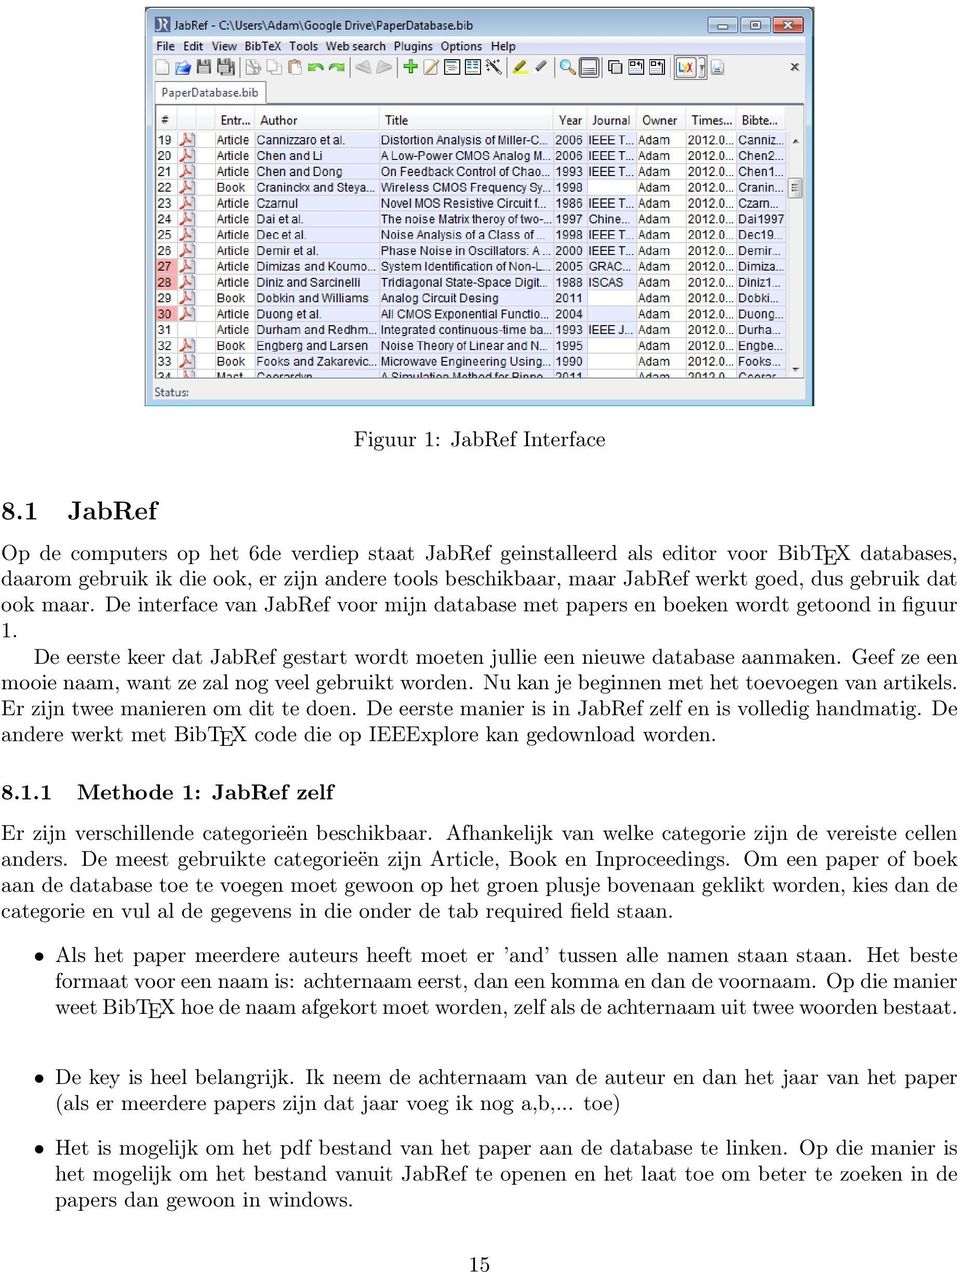 gebruik dat ook maar. De interface van JabRef voor mijn database met papers en boeken wordt getoond in figuur 1. De eerste keer dat JabRef gestart wordt moeten jullie een nieuwe database aanmaken.